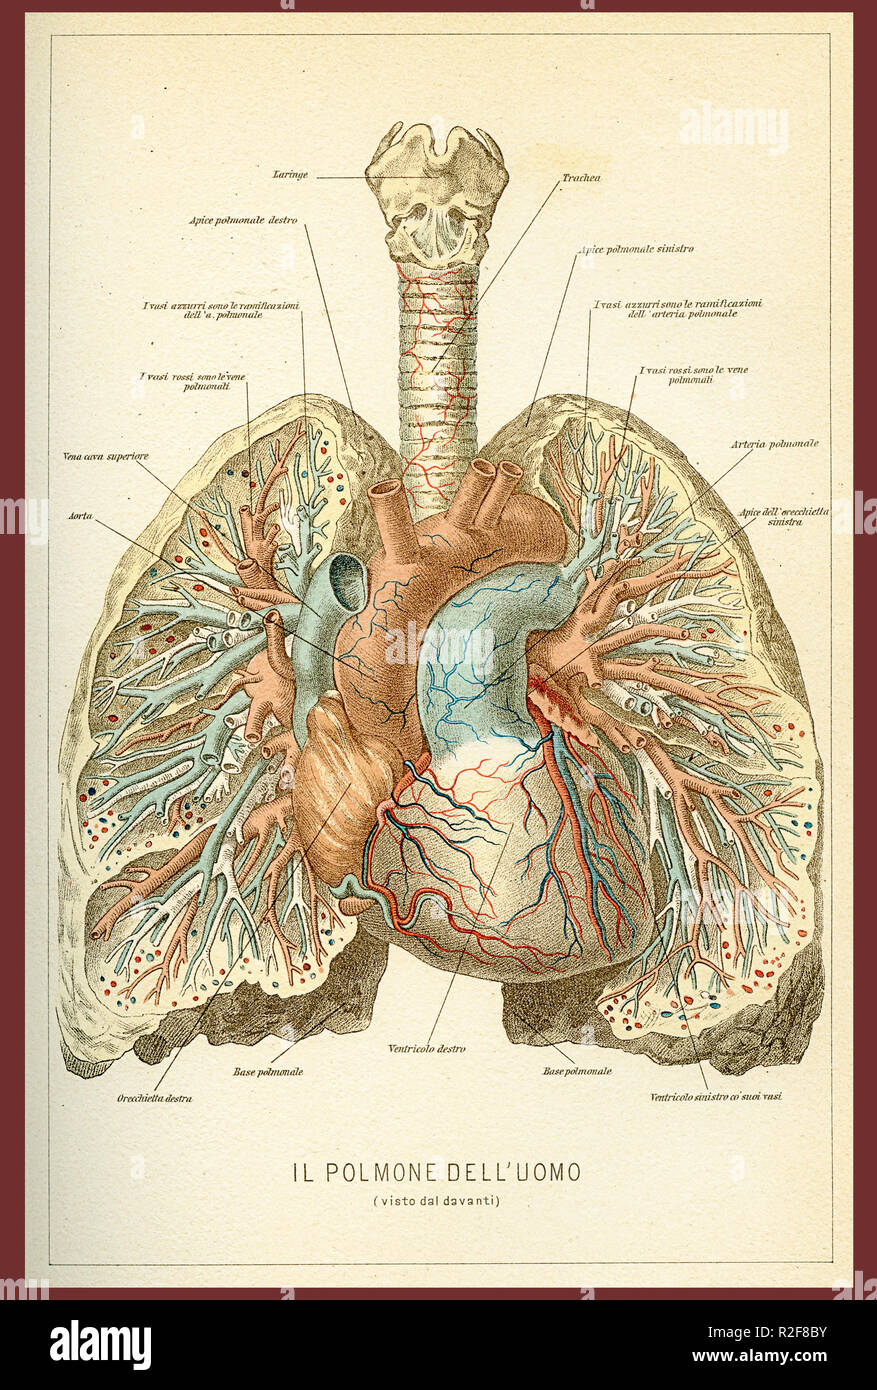 Vintage tabella di colore di anatomia umana, polmoni e cuore della circolazione sanguigna con italiano descrizioni anatomiche Foto Stock